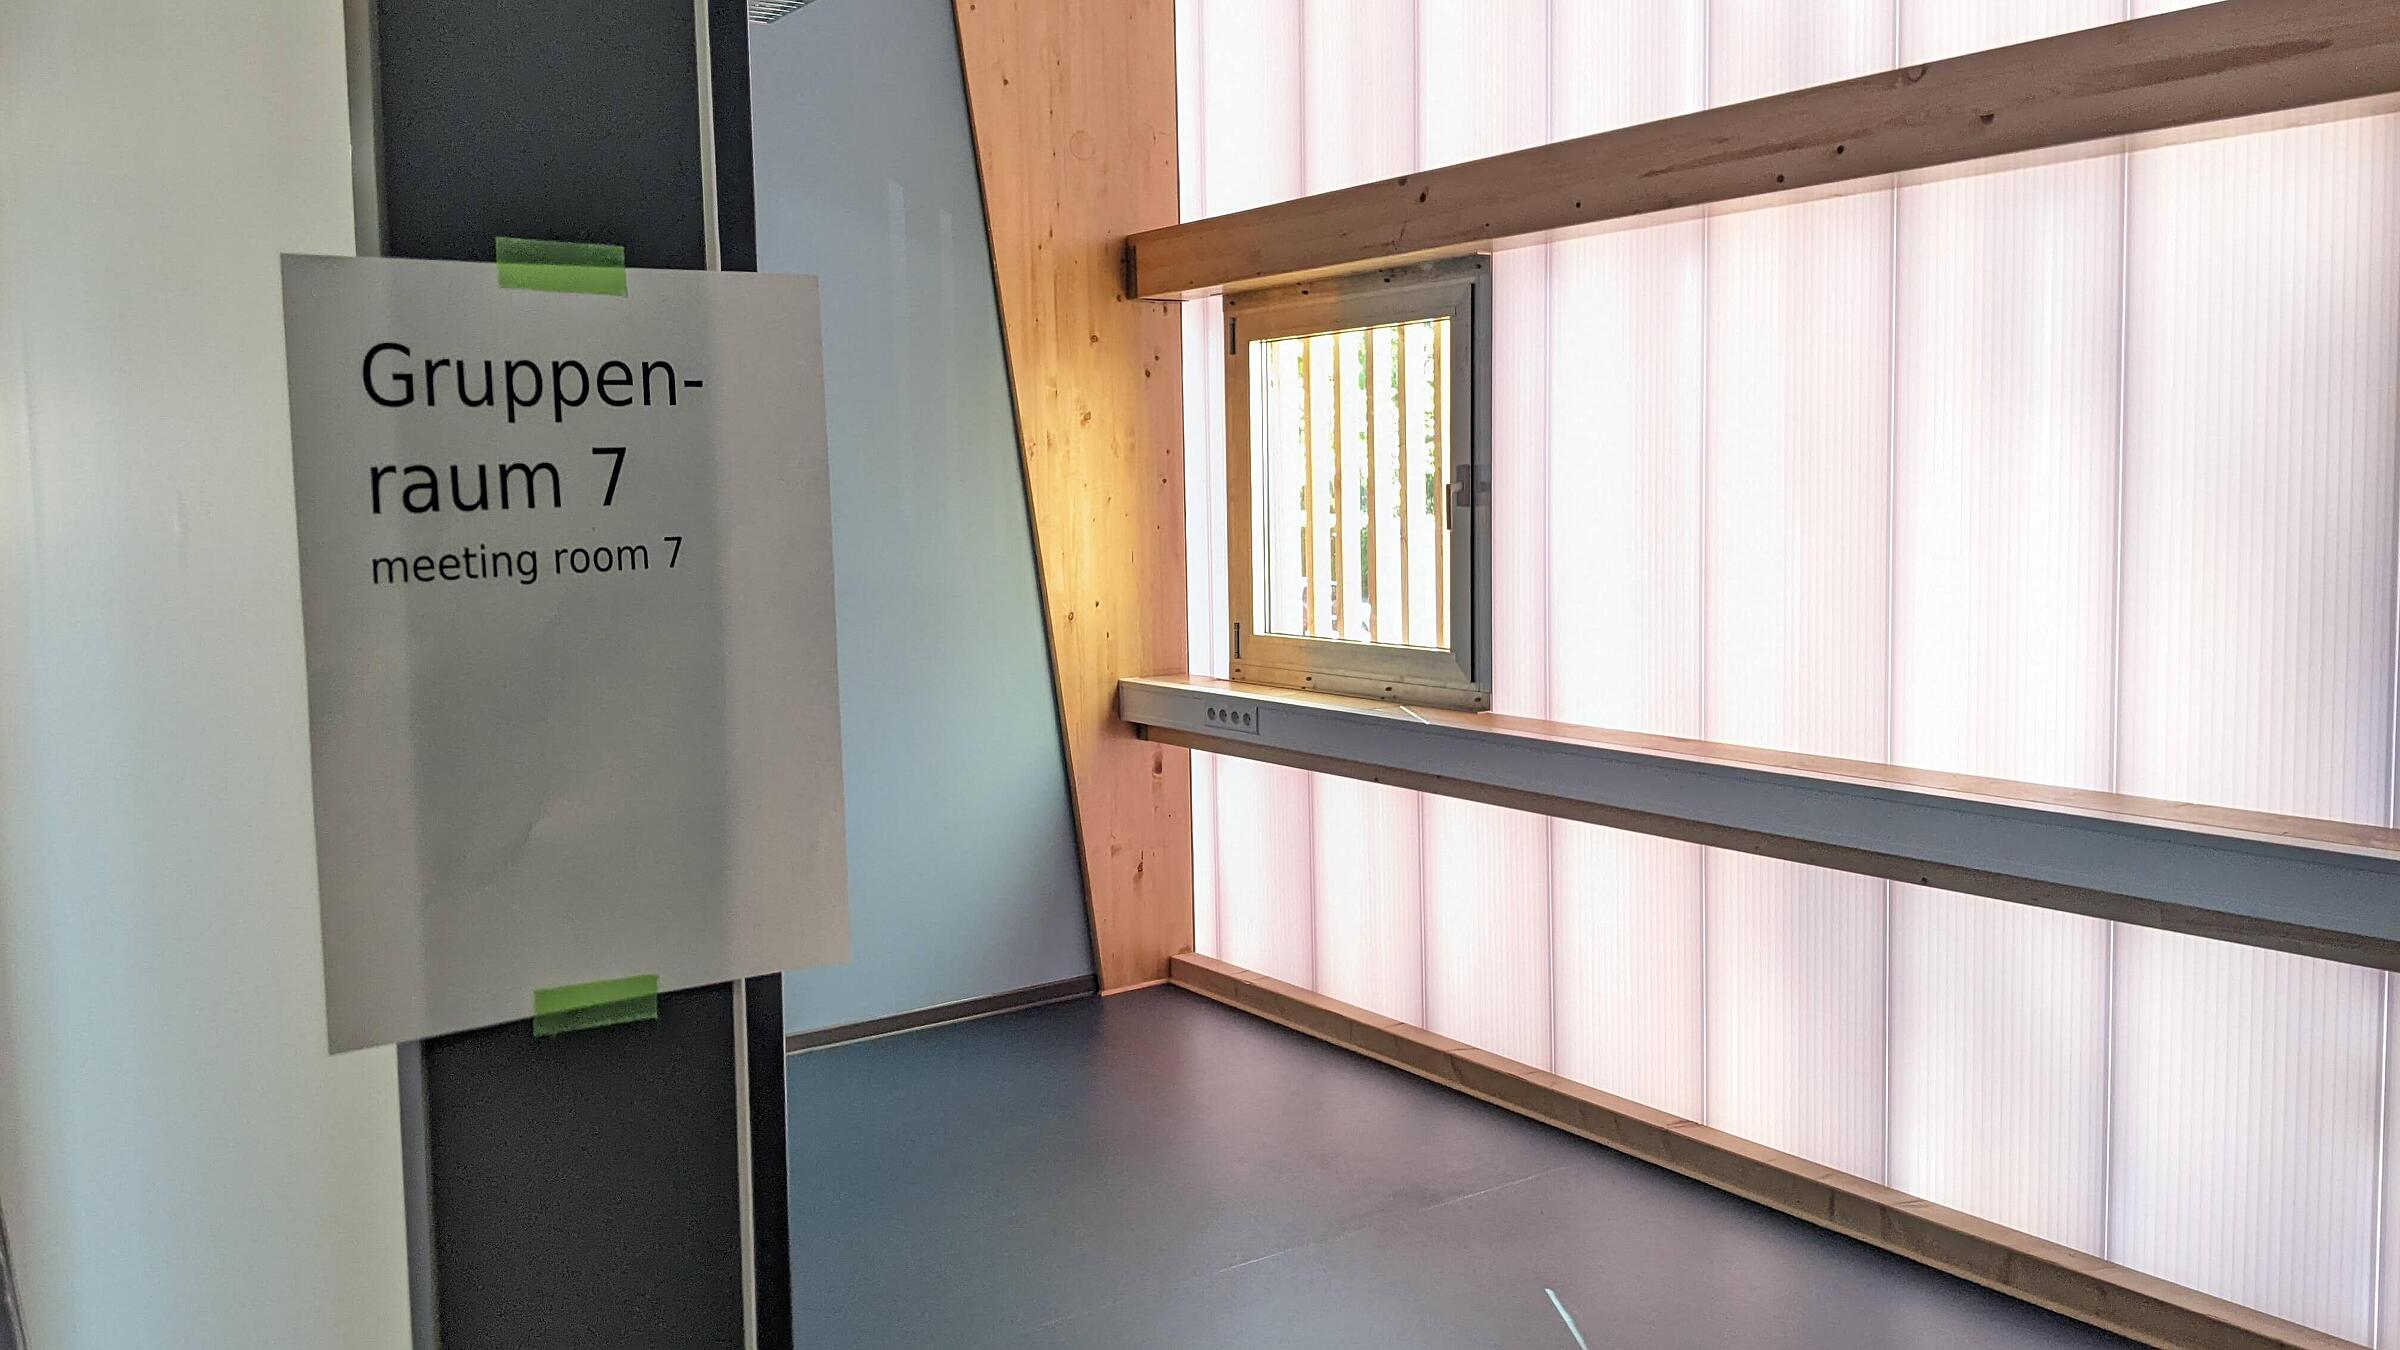 Ein einzelner Raum im PopUp Gebäude, am Türrahmen klebt ein Schild auf dem steht "Gruppenraum 7"